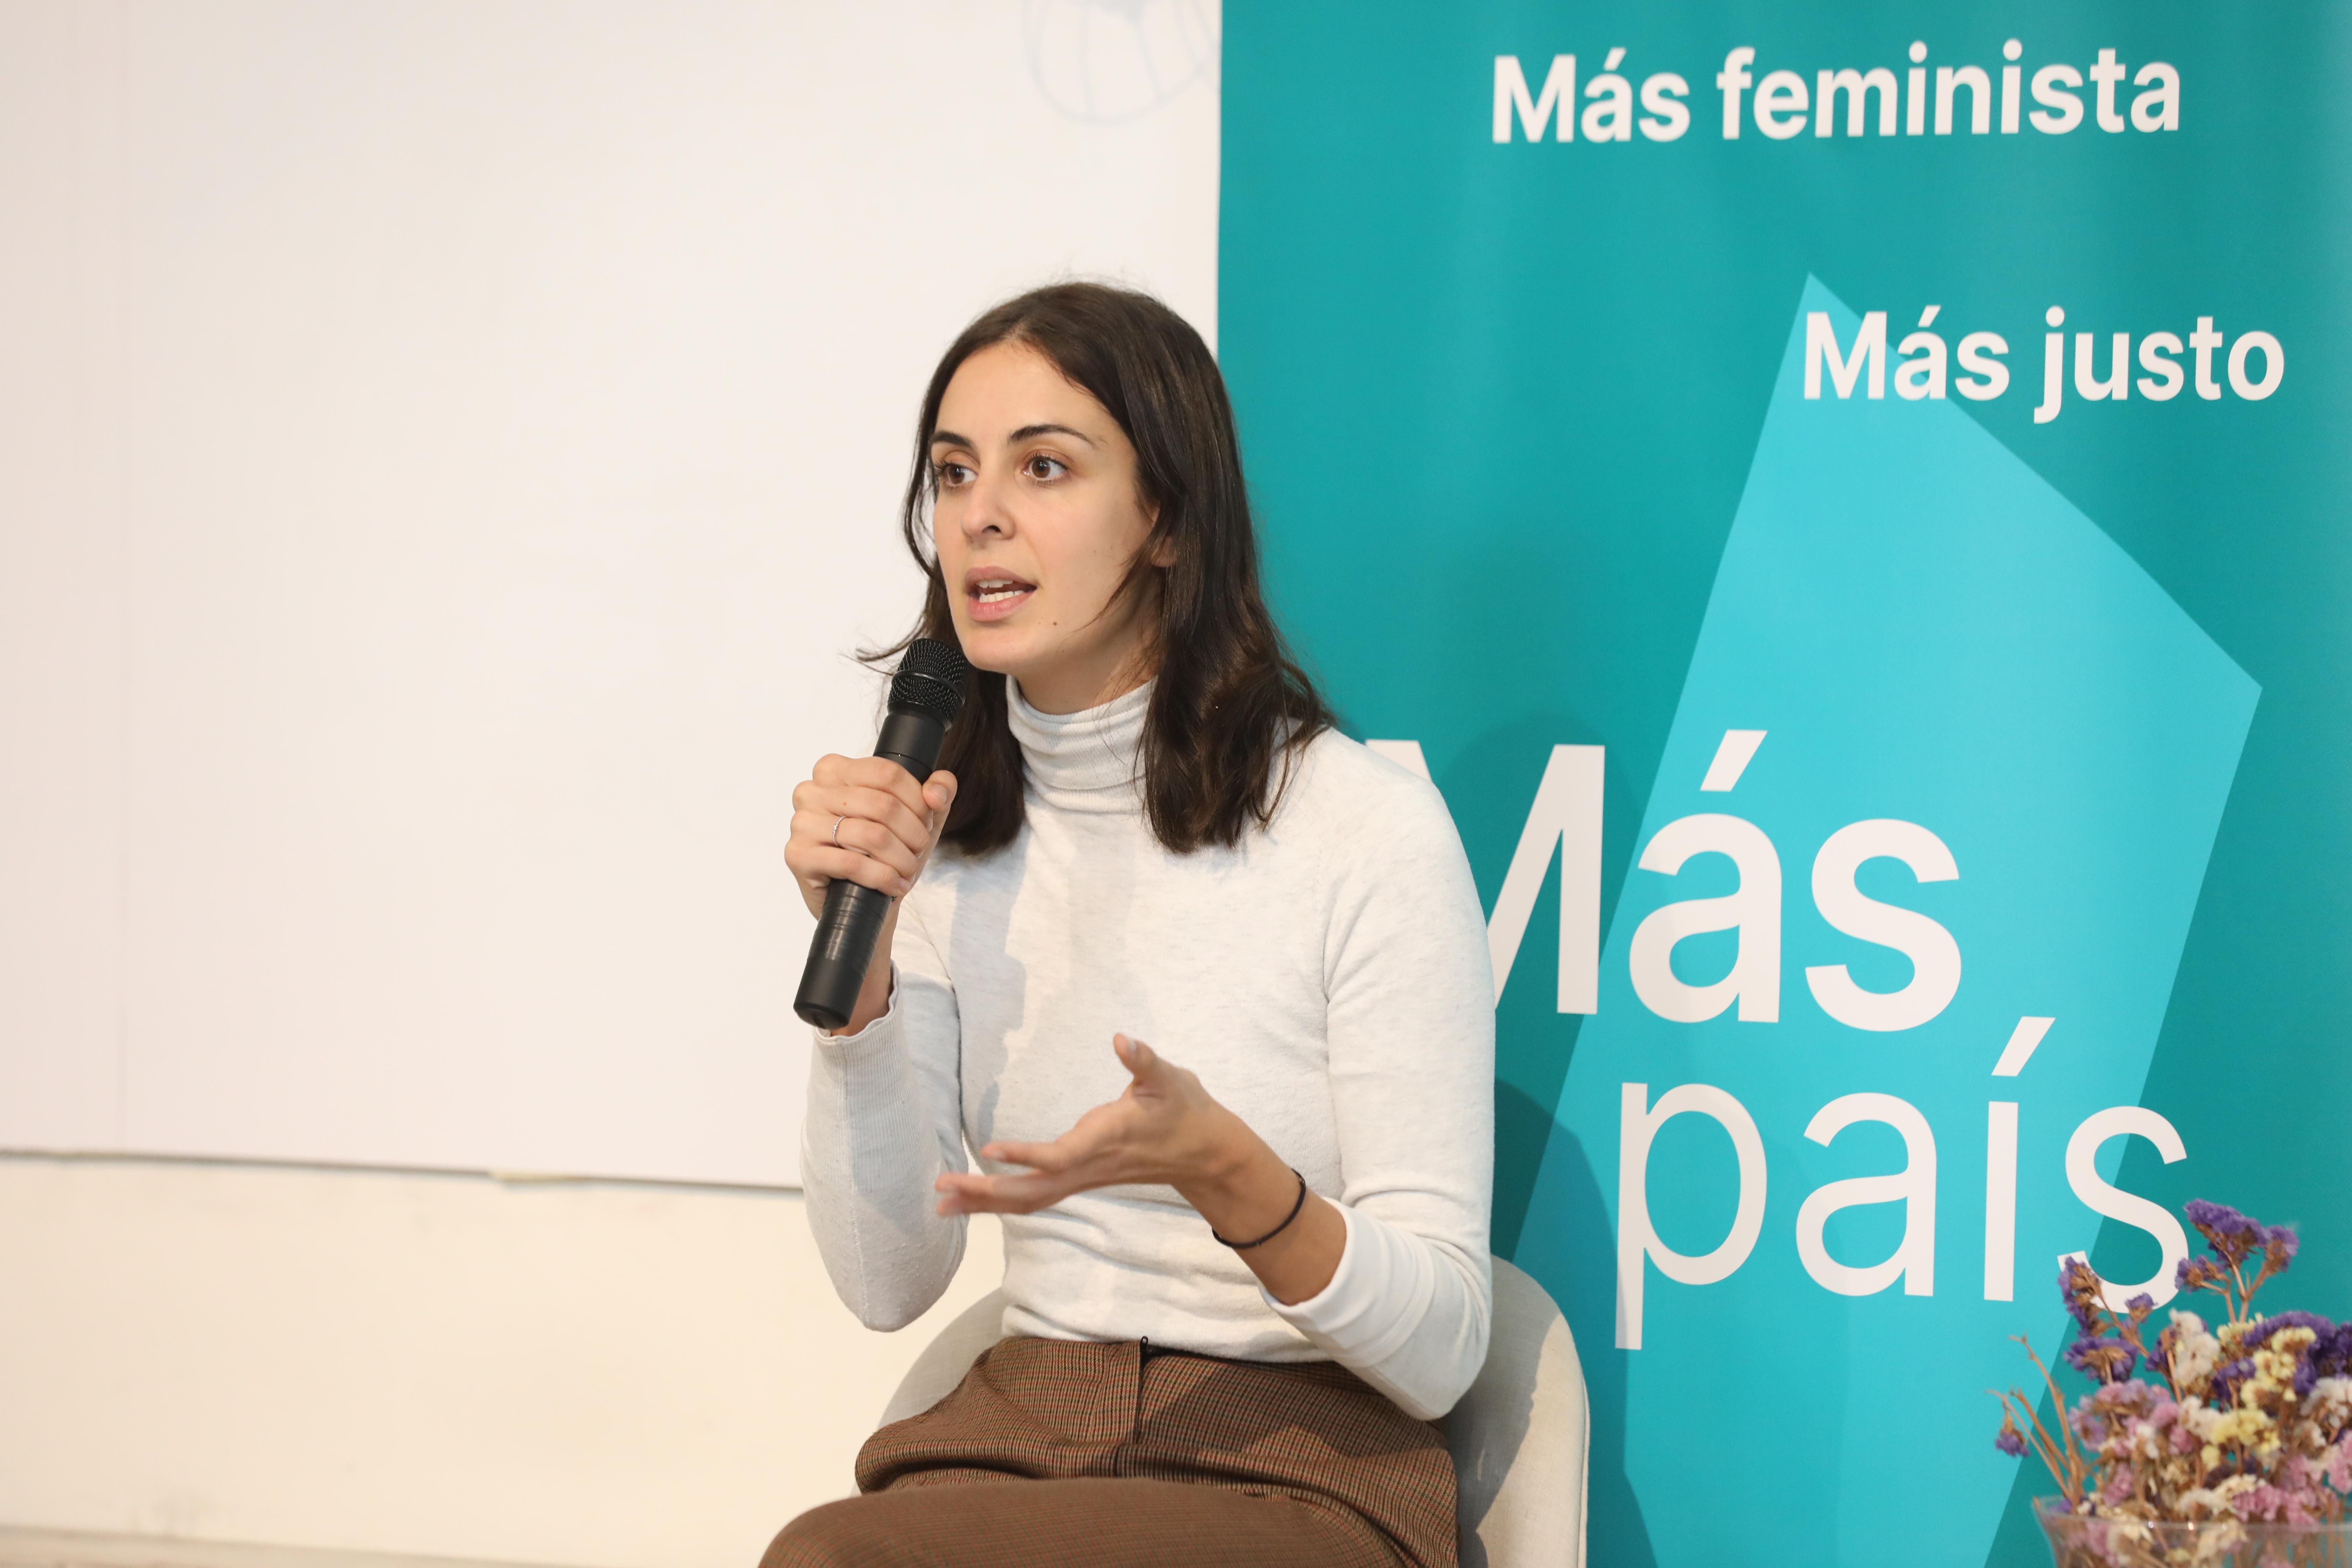 La portavoz de MásMadrid Rita Maestre durante su intervención en el acto de presentación de las líneas estratégica y actos del partido de Más País en Madrid.